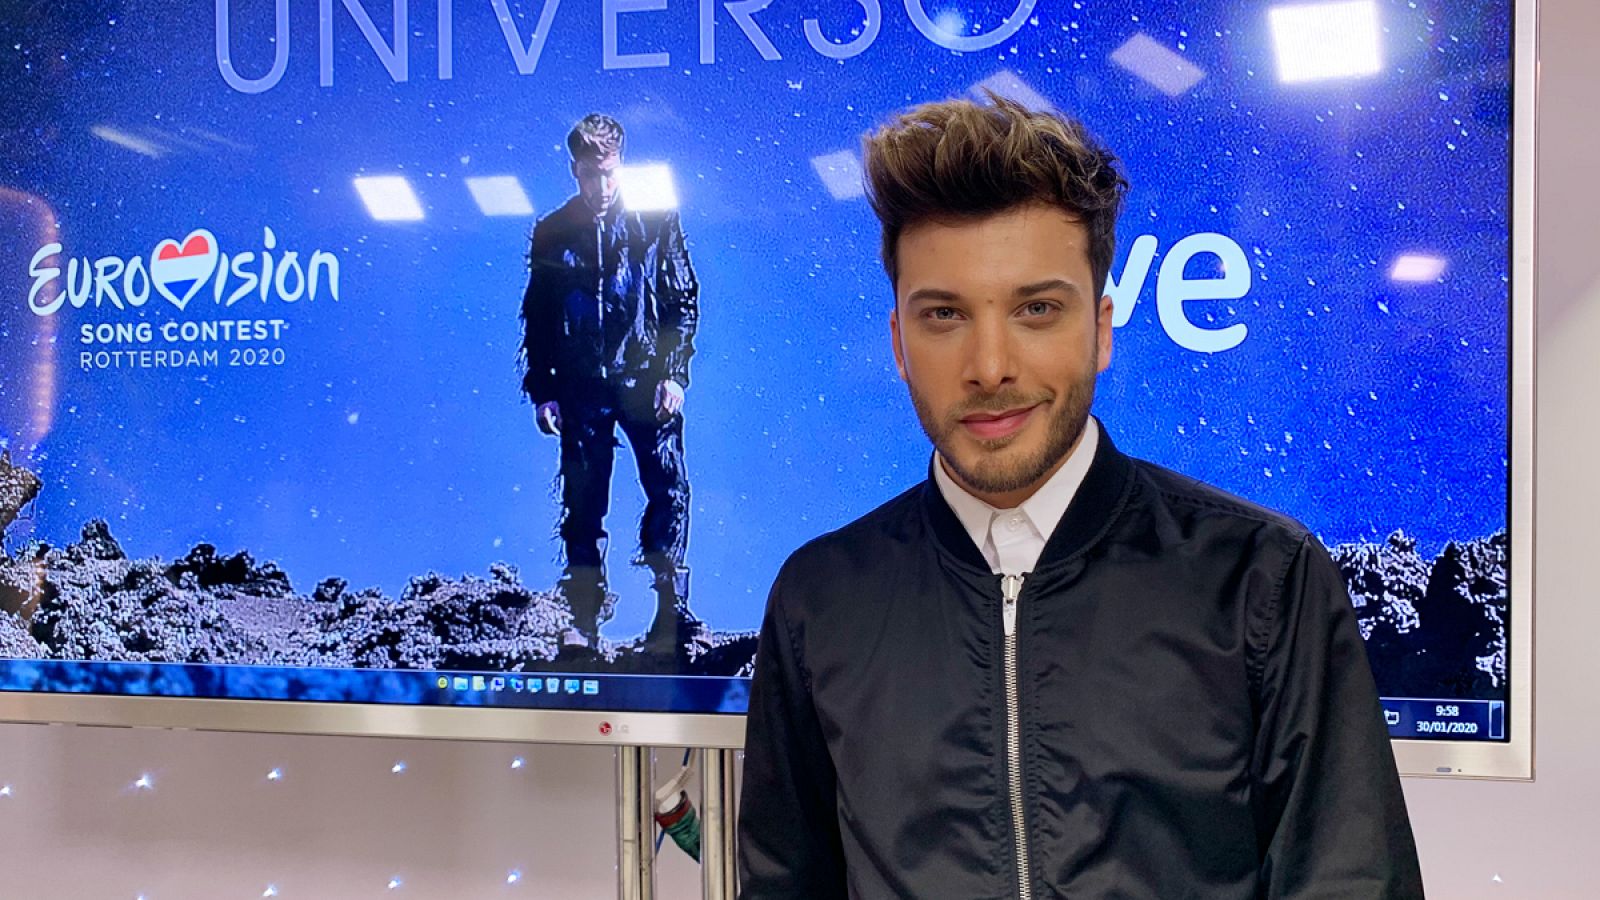 Eurovisión 2020 - Blas Cantó estrena el videoclip de "Universo" - RTVE.es